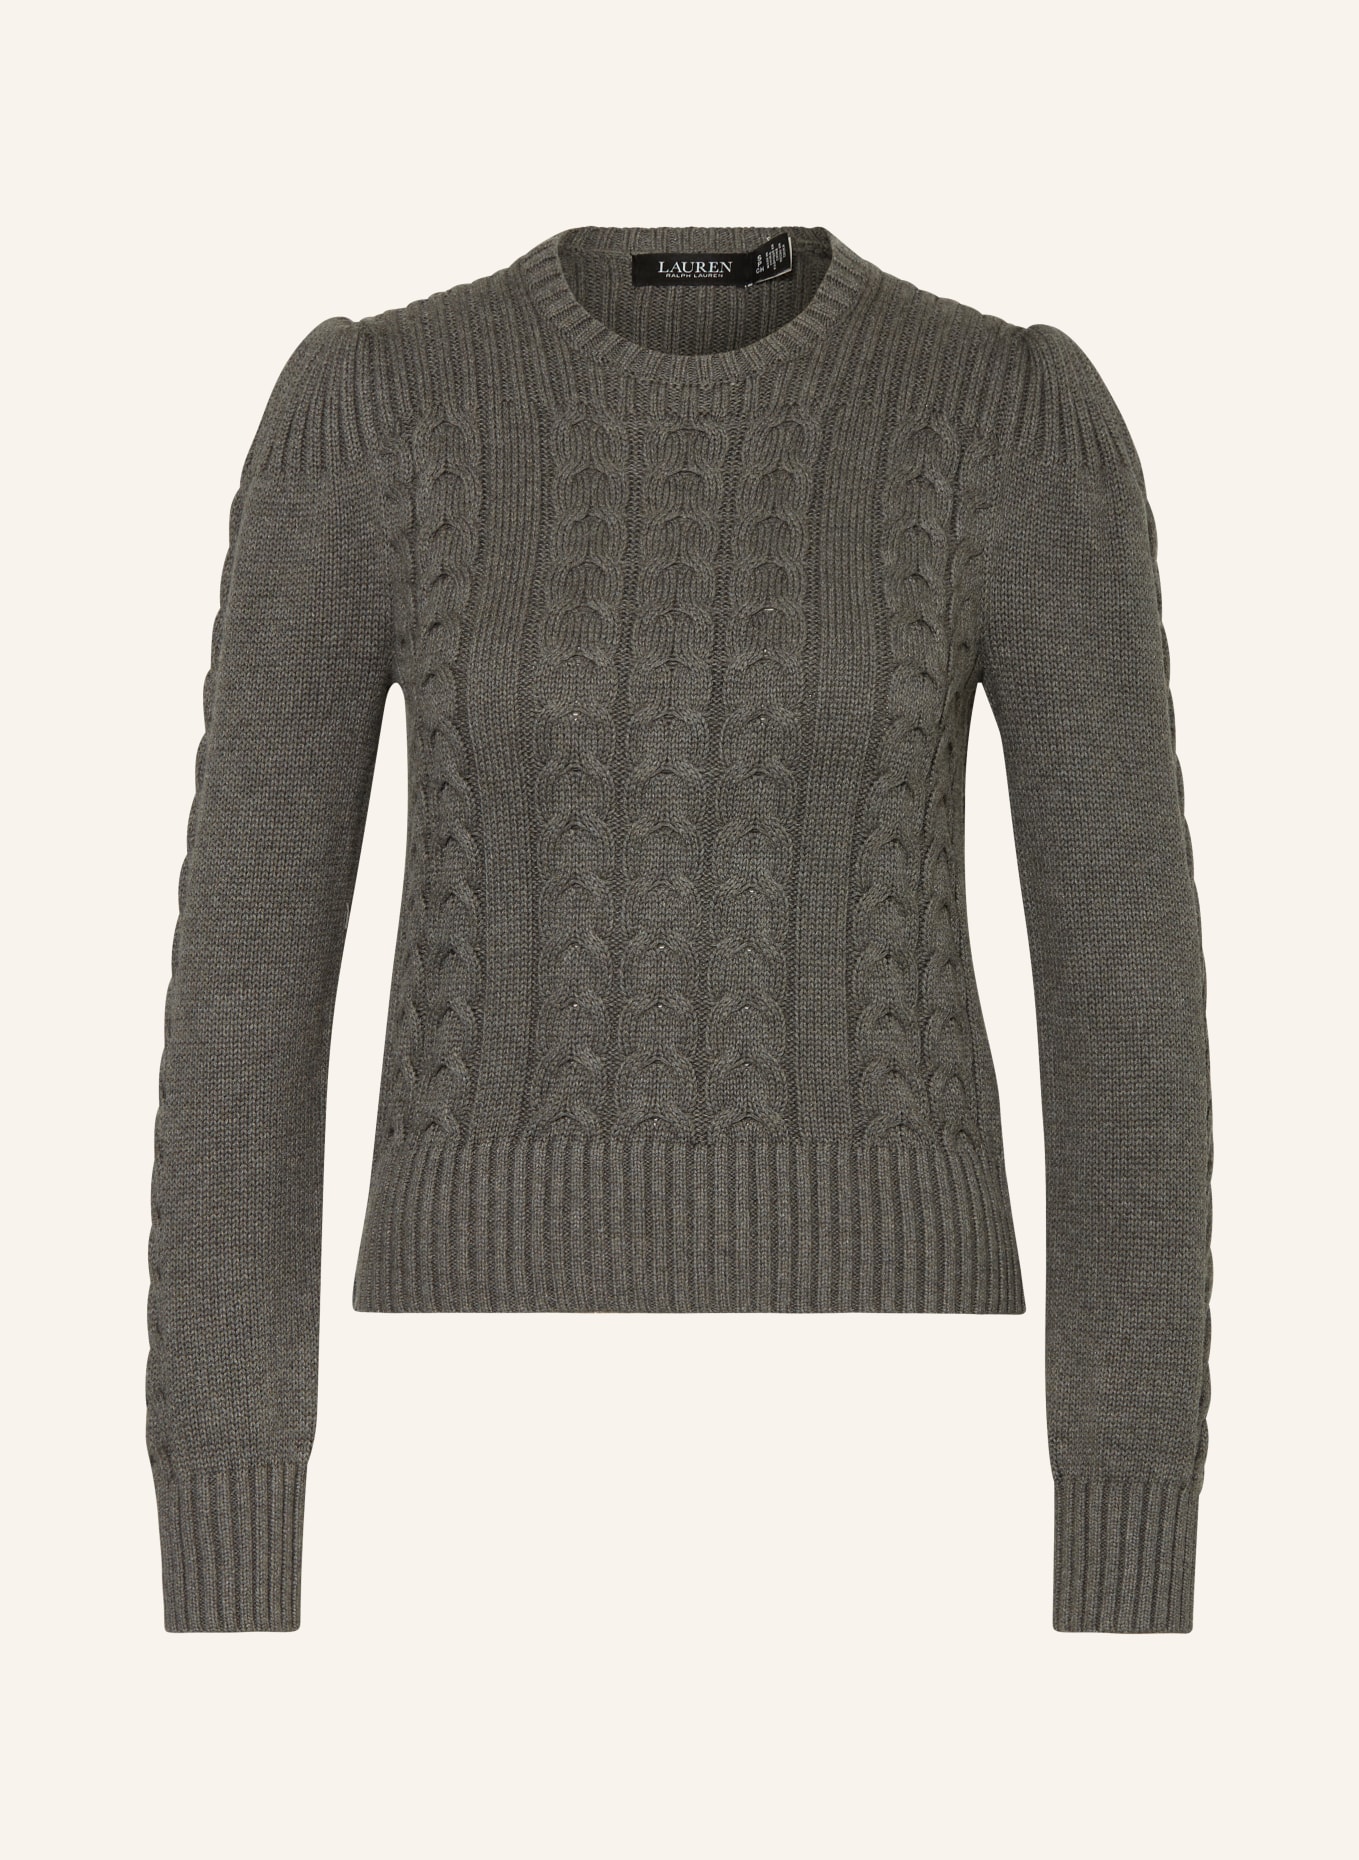 LAUREN RALPH LAUREN Sweater, Color: GRAY (Image 1)